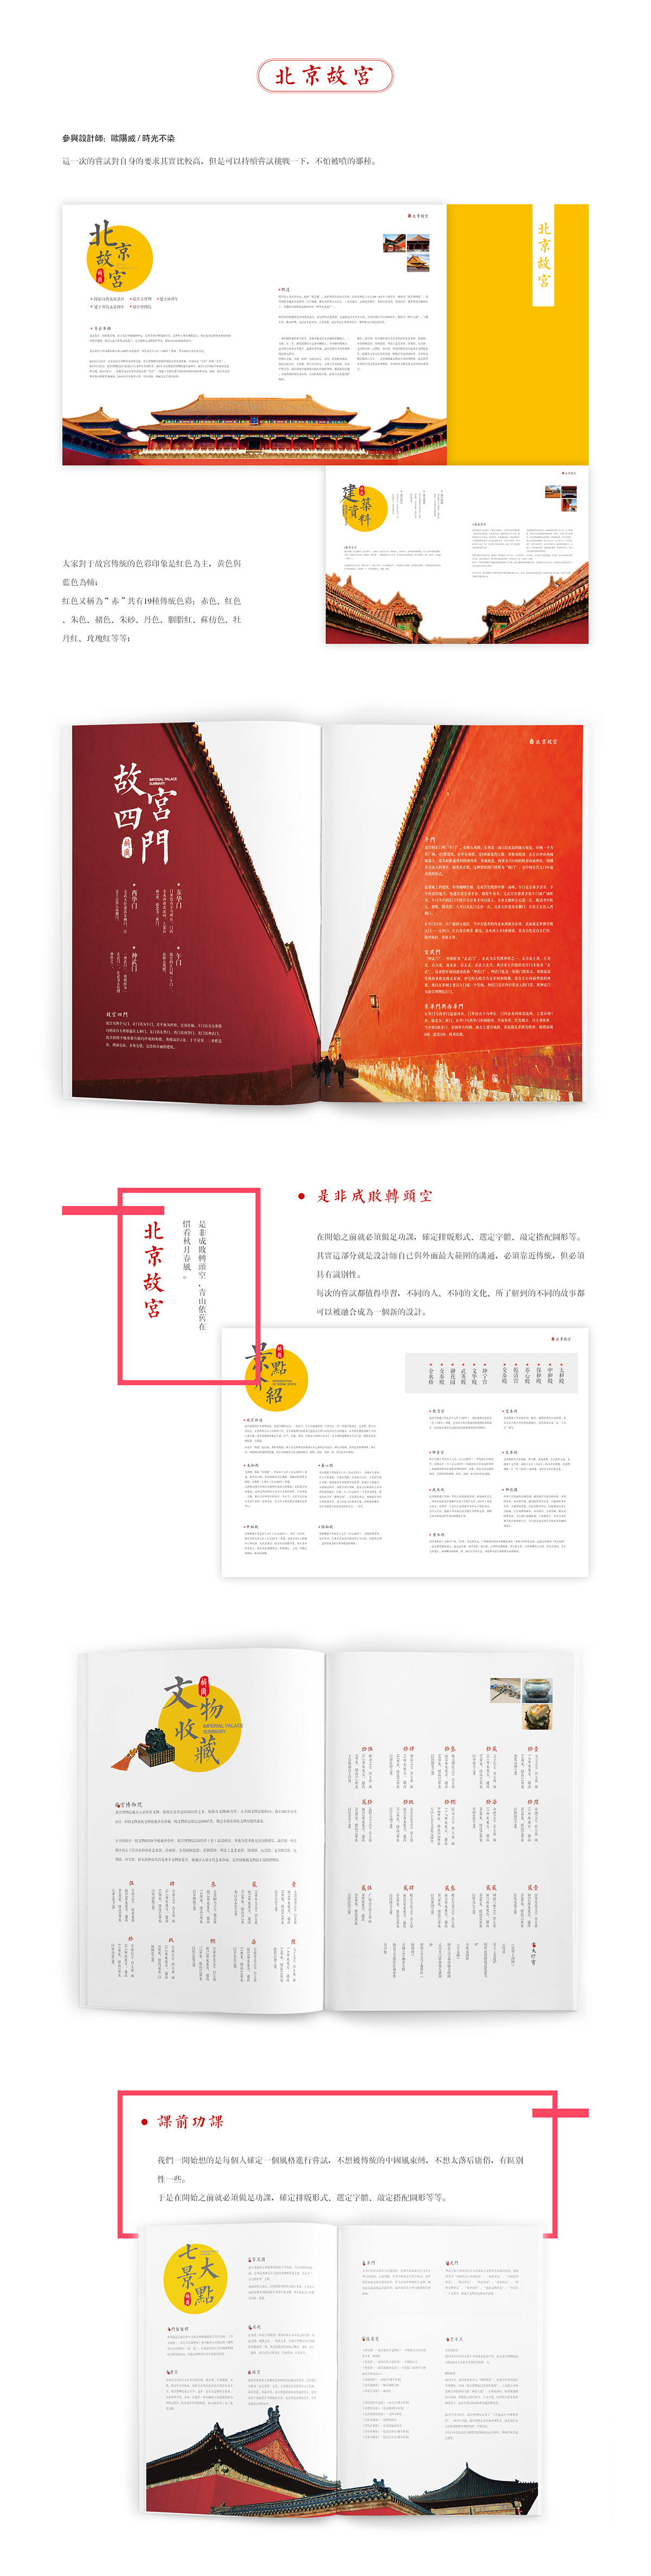 版式设计 中国风设计 画册设计 印刷品 品牌推广 编辑设计 书籍设计 品牌设计